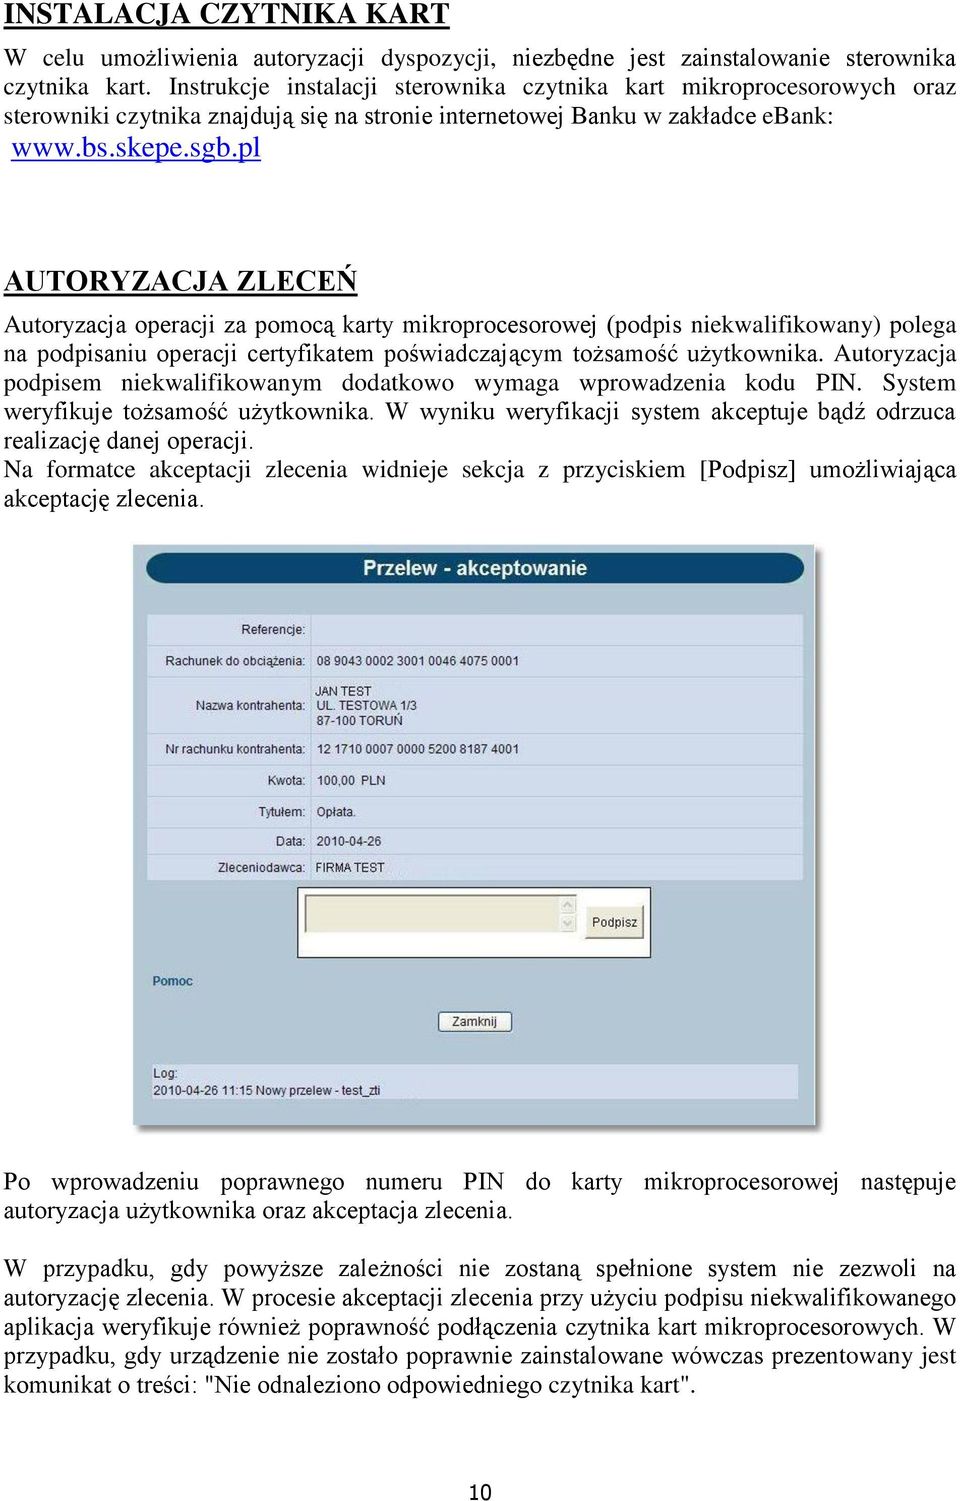 pl AUTORYZACJA ZLECEŃ Autoryzacja operacji za pomocą karty mikroprocesorowej (podpis niekwalifikowany) polega na podpisaniu operacji certyfikatem poświadczającym tożsamość użytkownika.